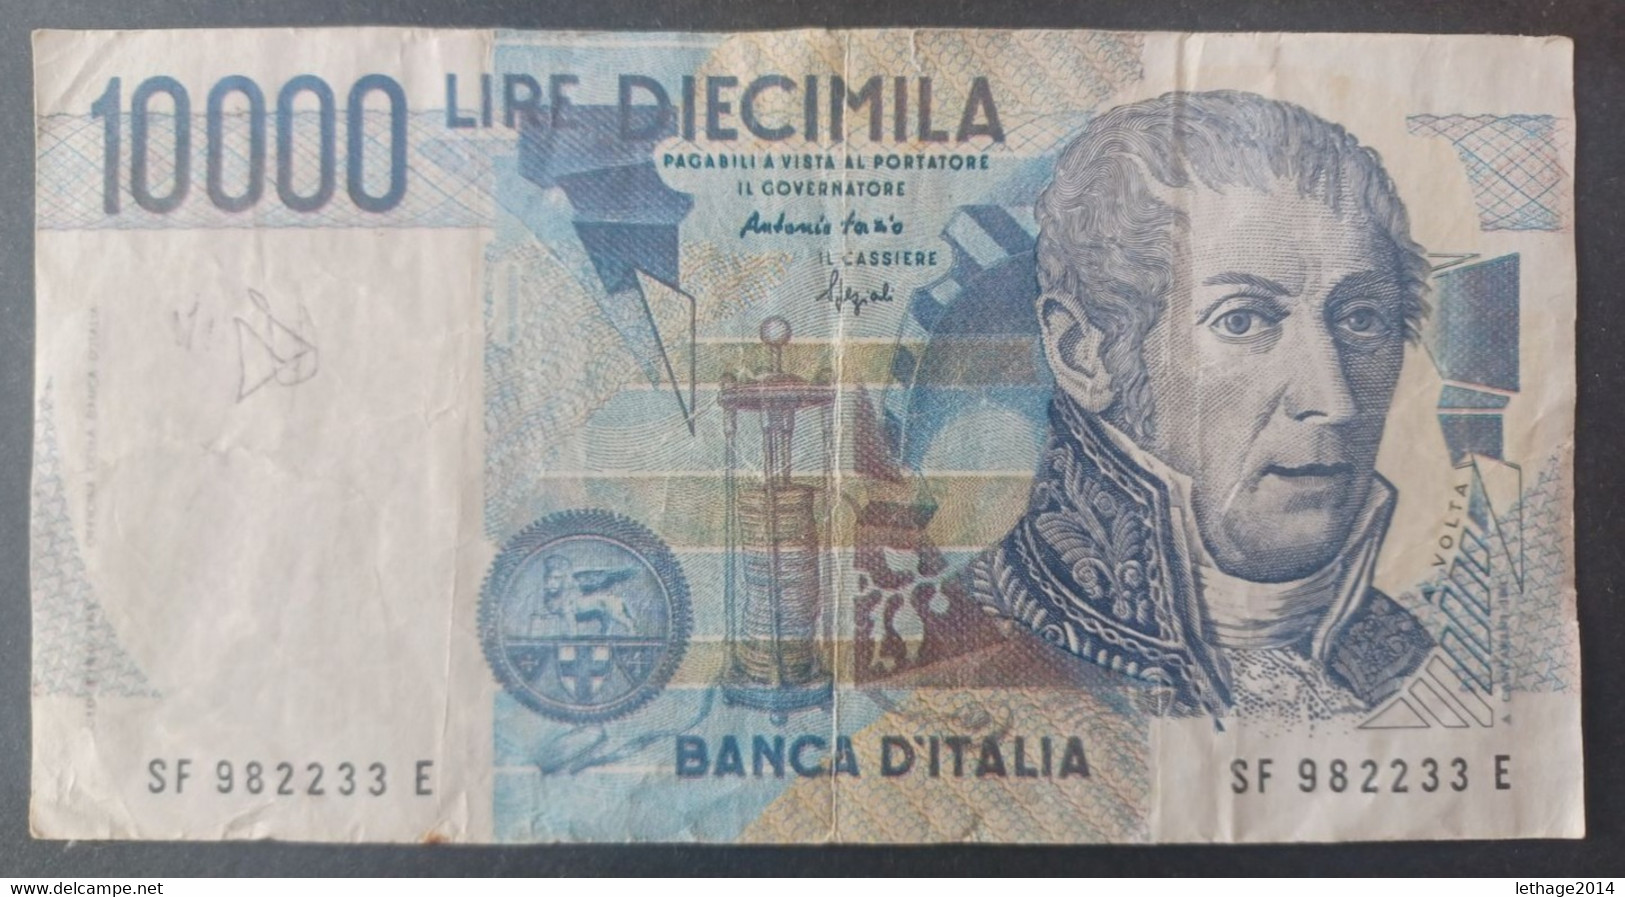 BANKNOTE ITALIA 10000 LIRE 1994 FAZIO SPEZIALI CIRCULATED - 10.000 Lire